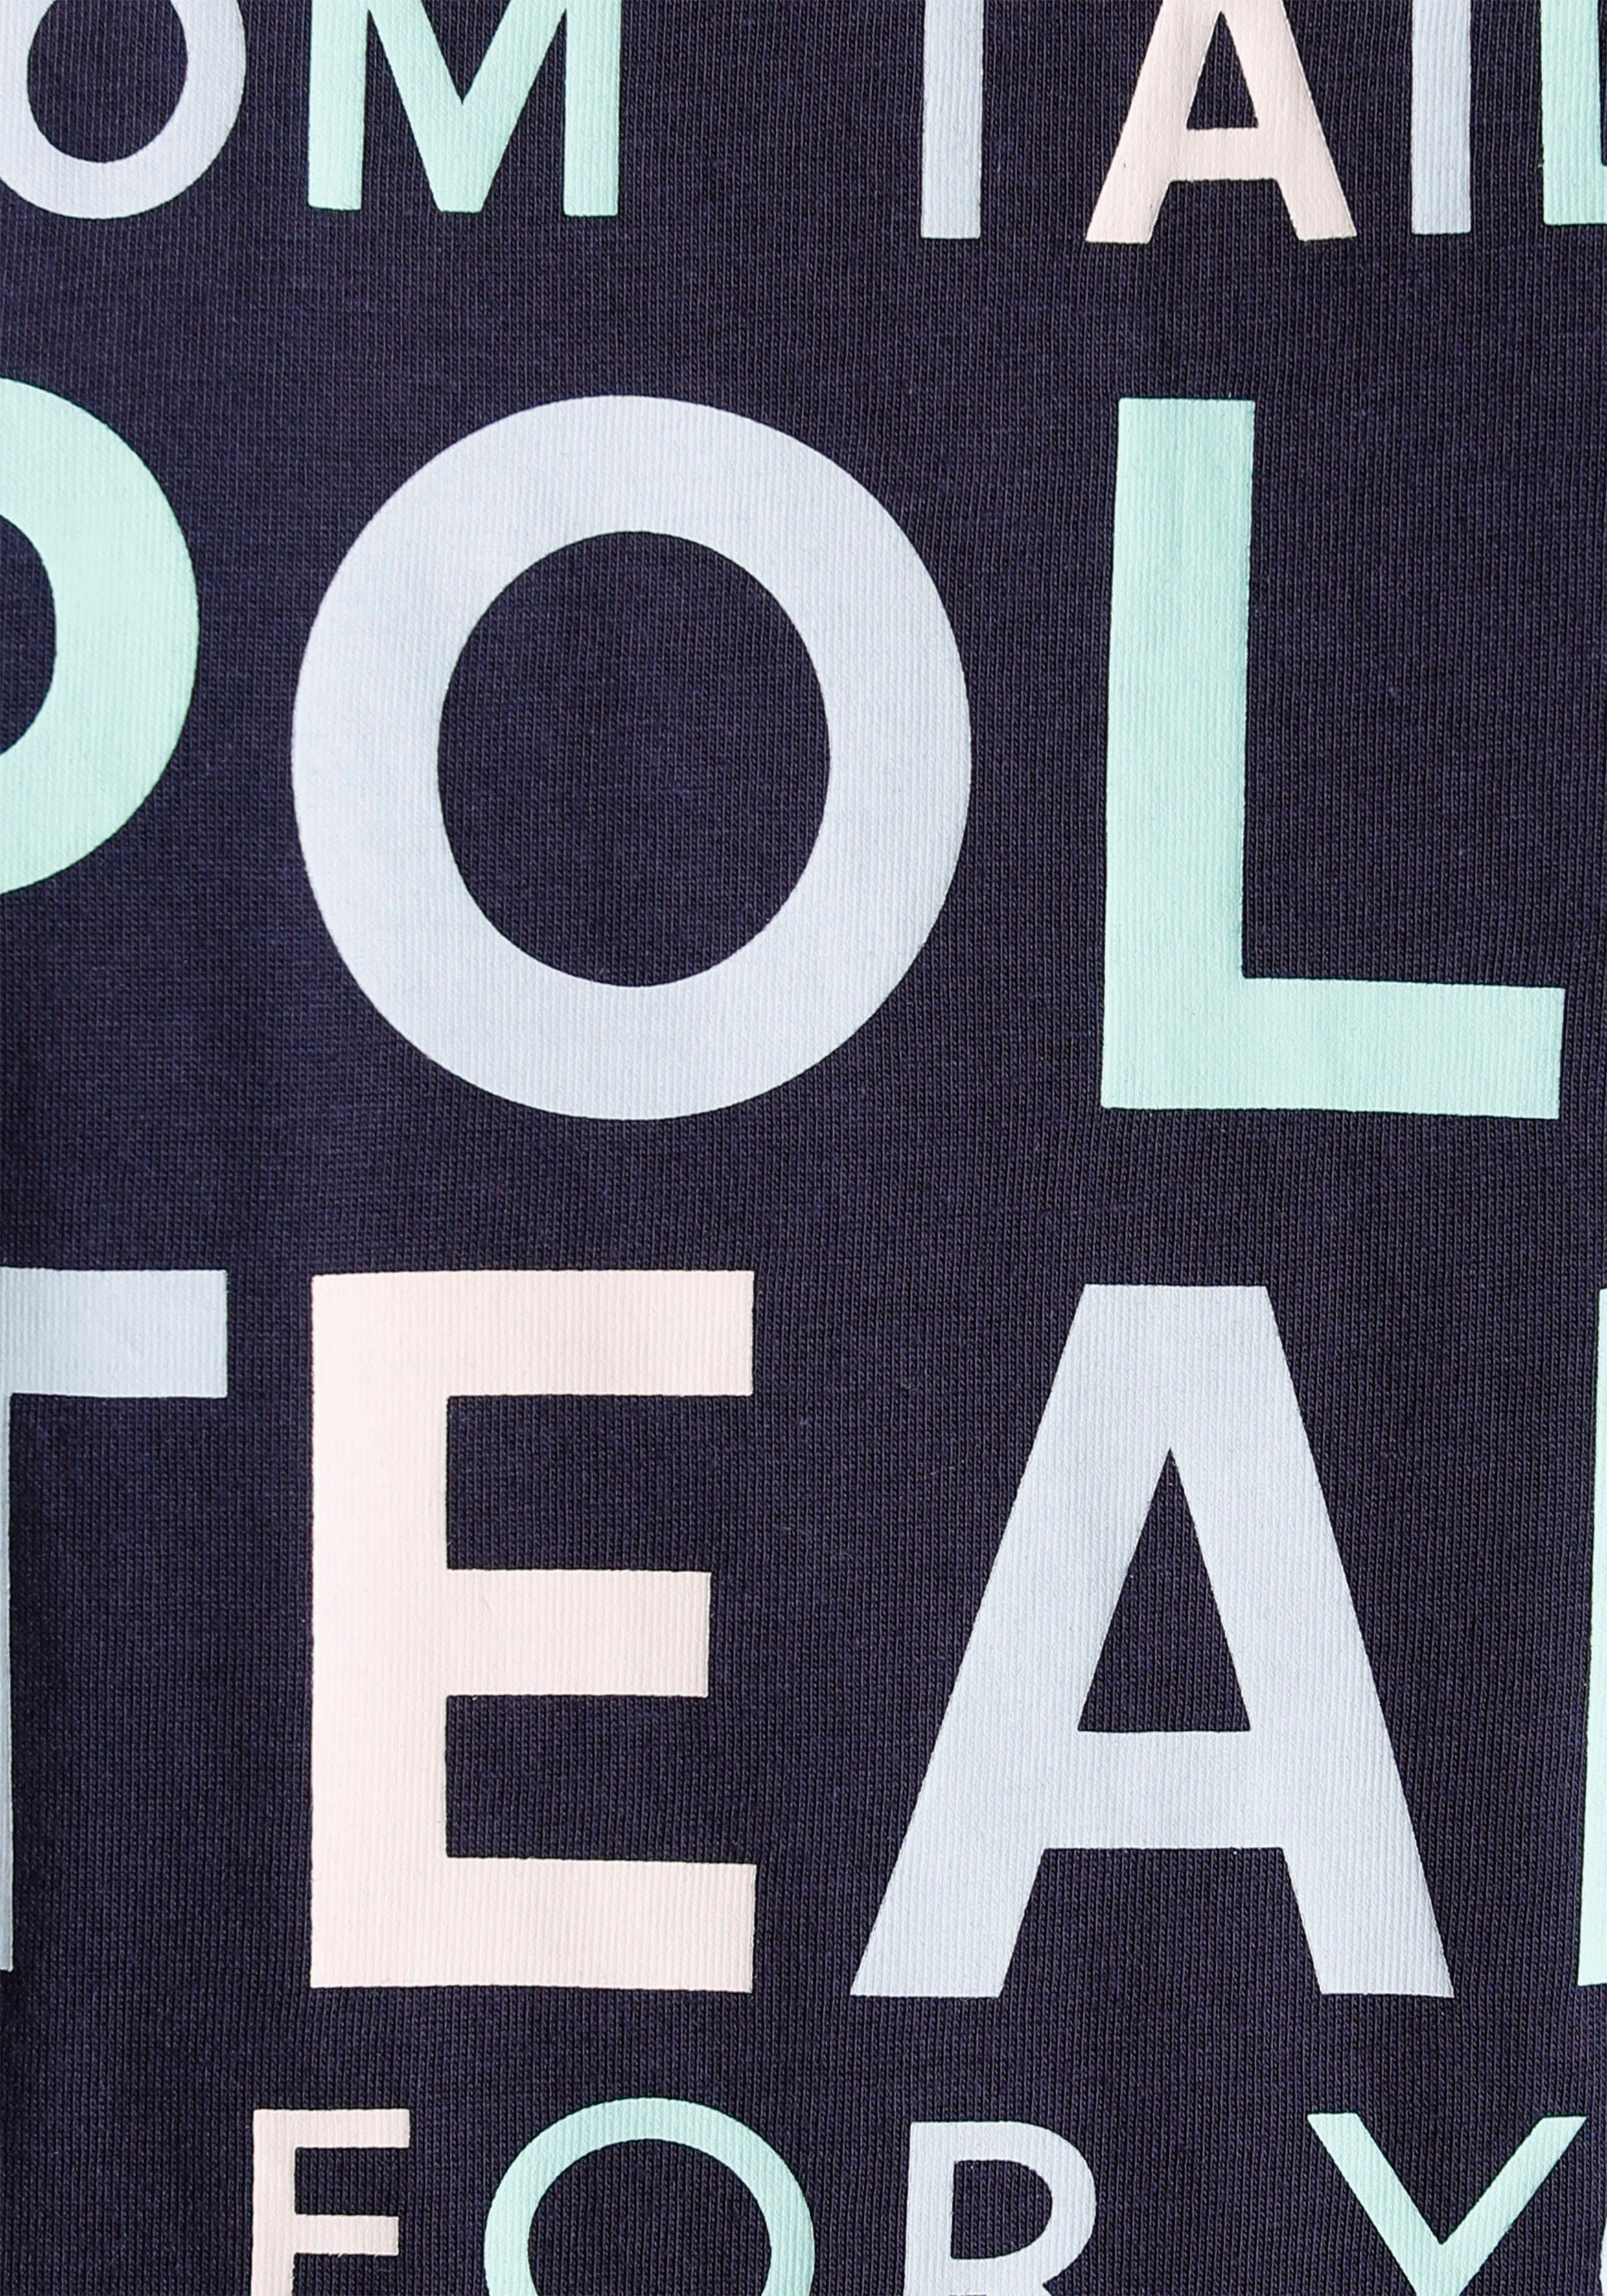 TOM TAILOR Polo Team Logo-Print farbenfrohen Print-Shirt großem